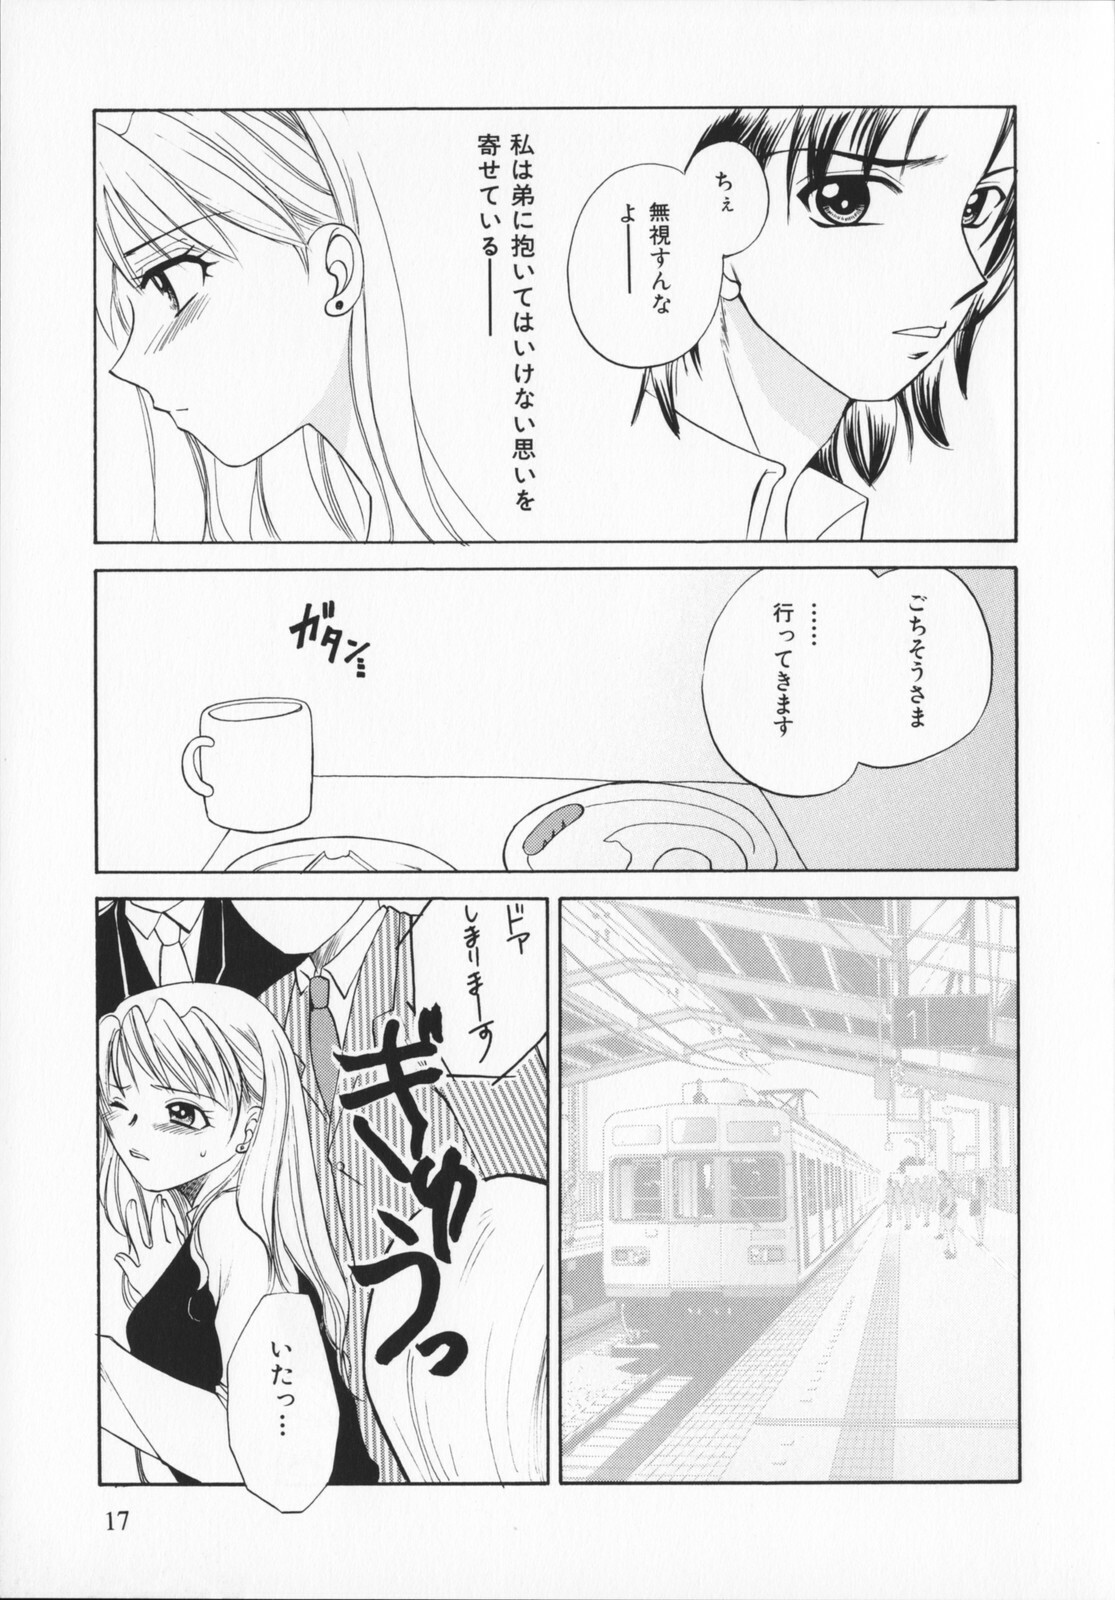 [Ureshino Megumi]Genkaiharetsu (LIMIT EXPLOSION) page 16 full